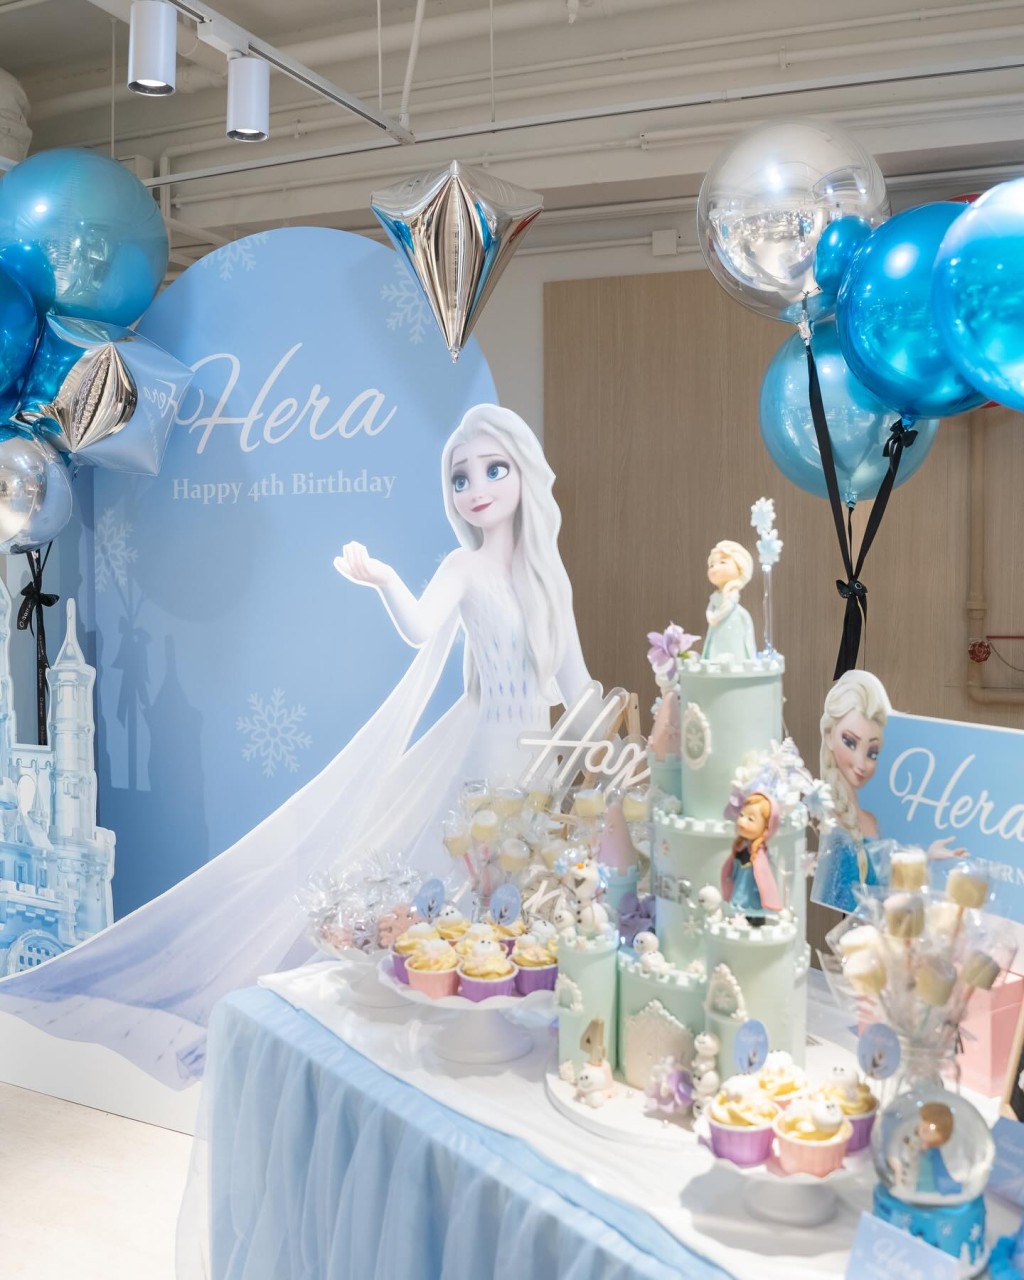 现场配合主题《冰雪奇缘》以粉蓝及银色的气球布置，布景板写上「Hera Happy 4th Birthday」。